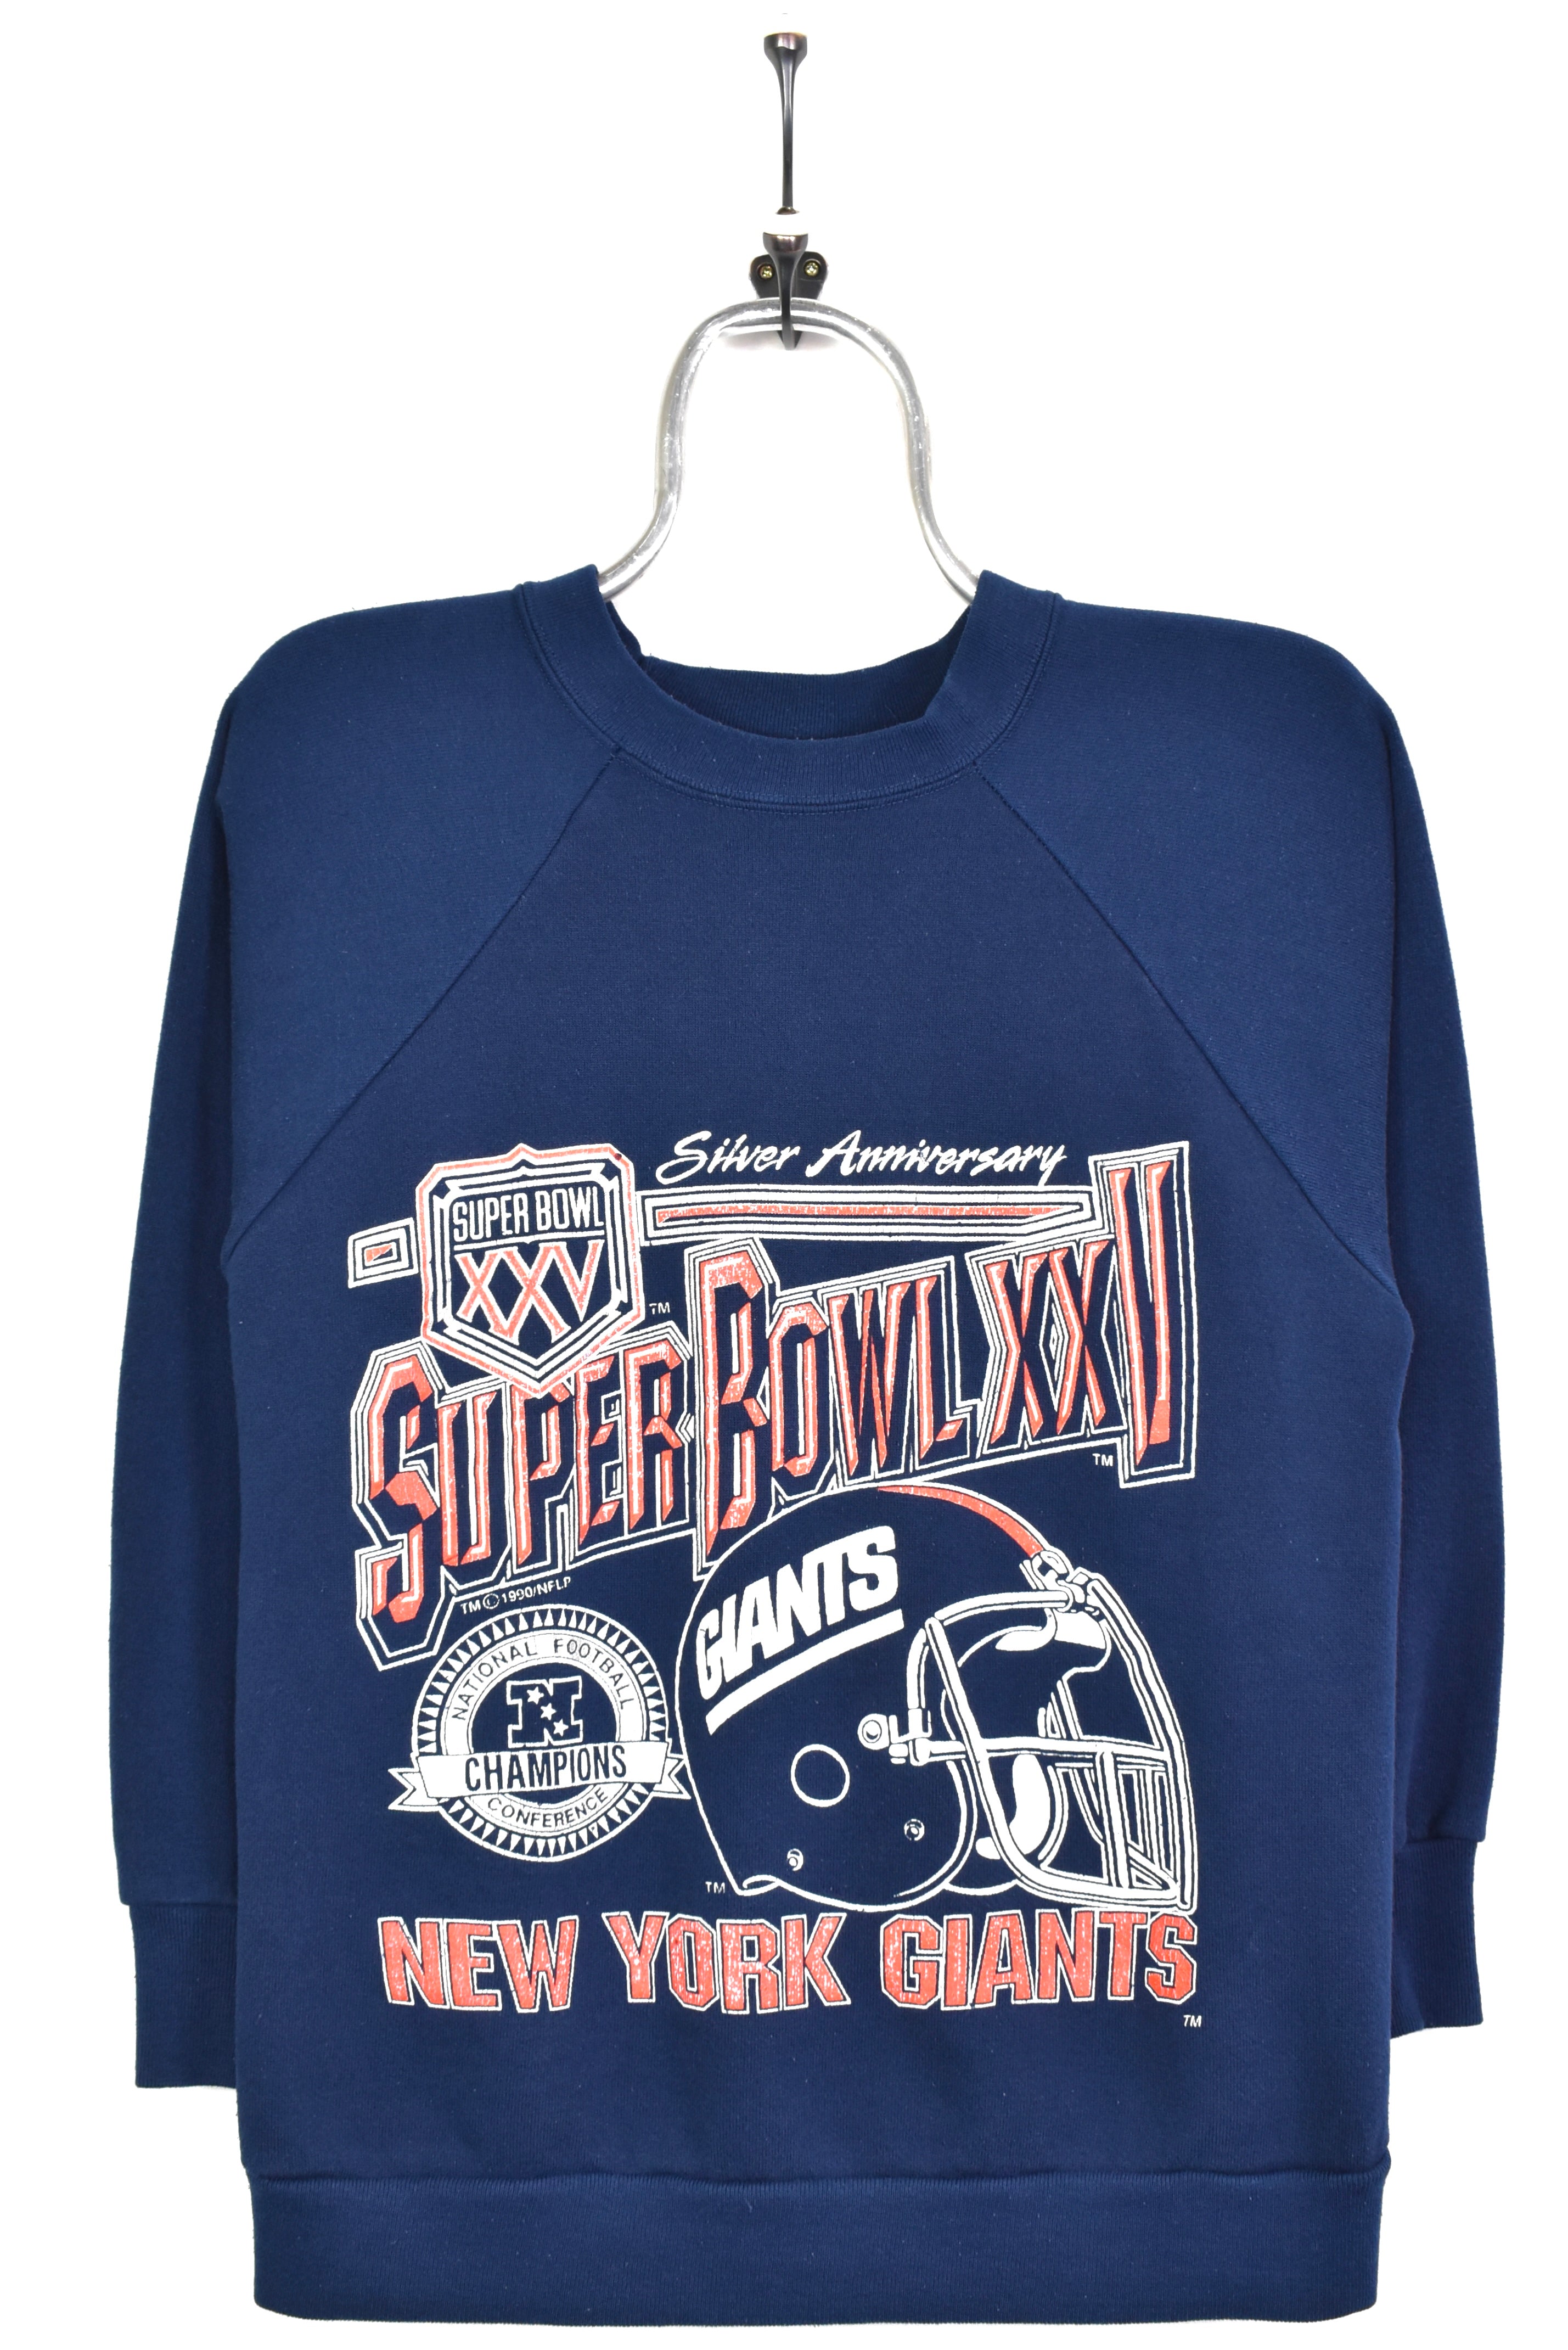 Ny Giants Sweatshirt Mens Womens Ny Giants Football Shirt Vintage